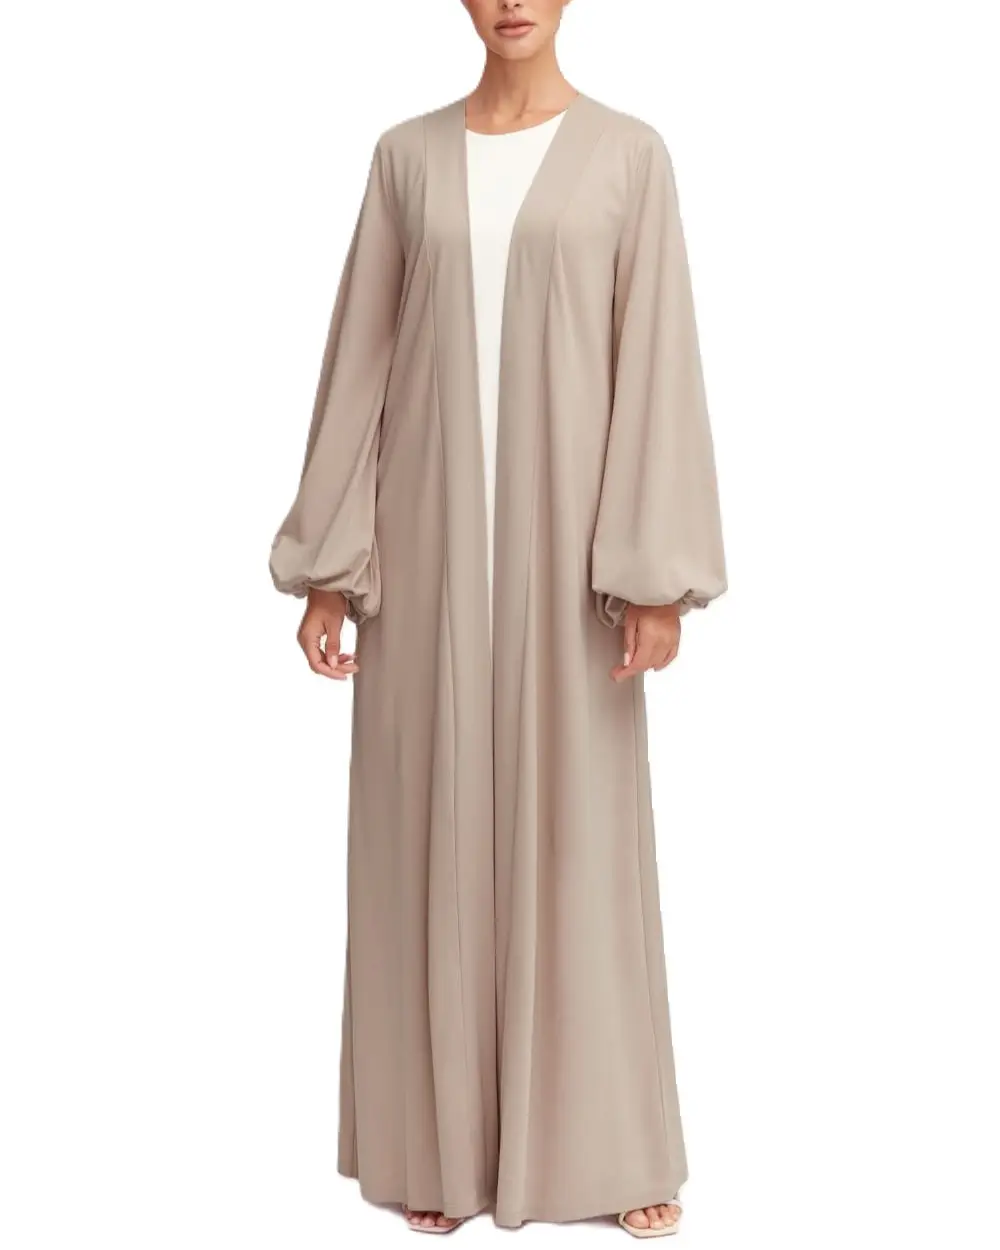 Yüksek kalite mütevazı islam giyim uzun namaz elbise düz Robe açık ön iç Abaya kadınlar müslüman elbise başörtüsü Abaya